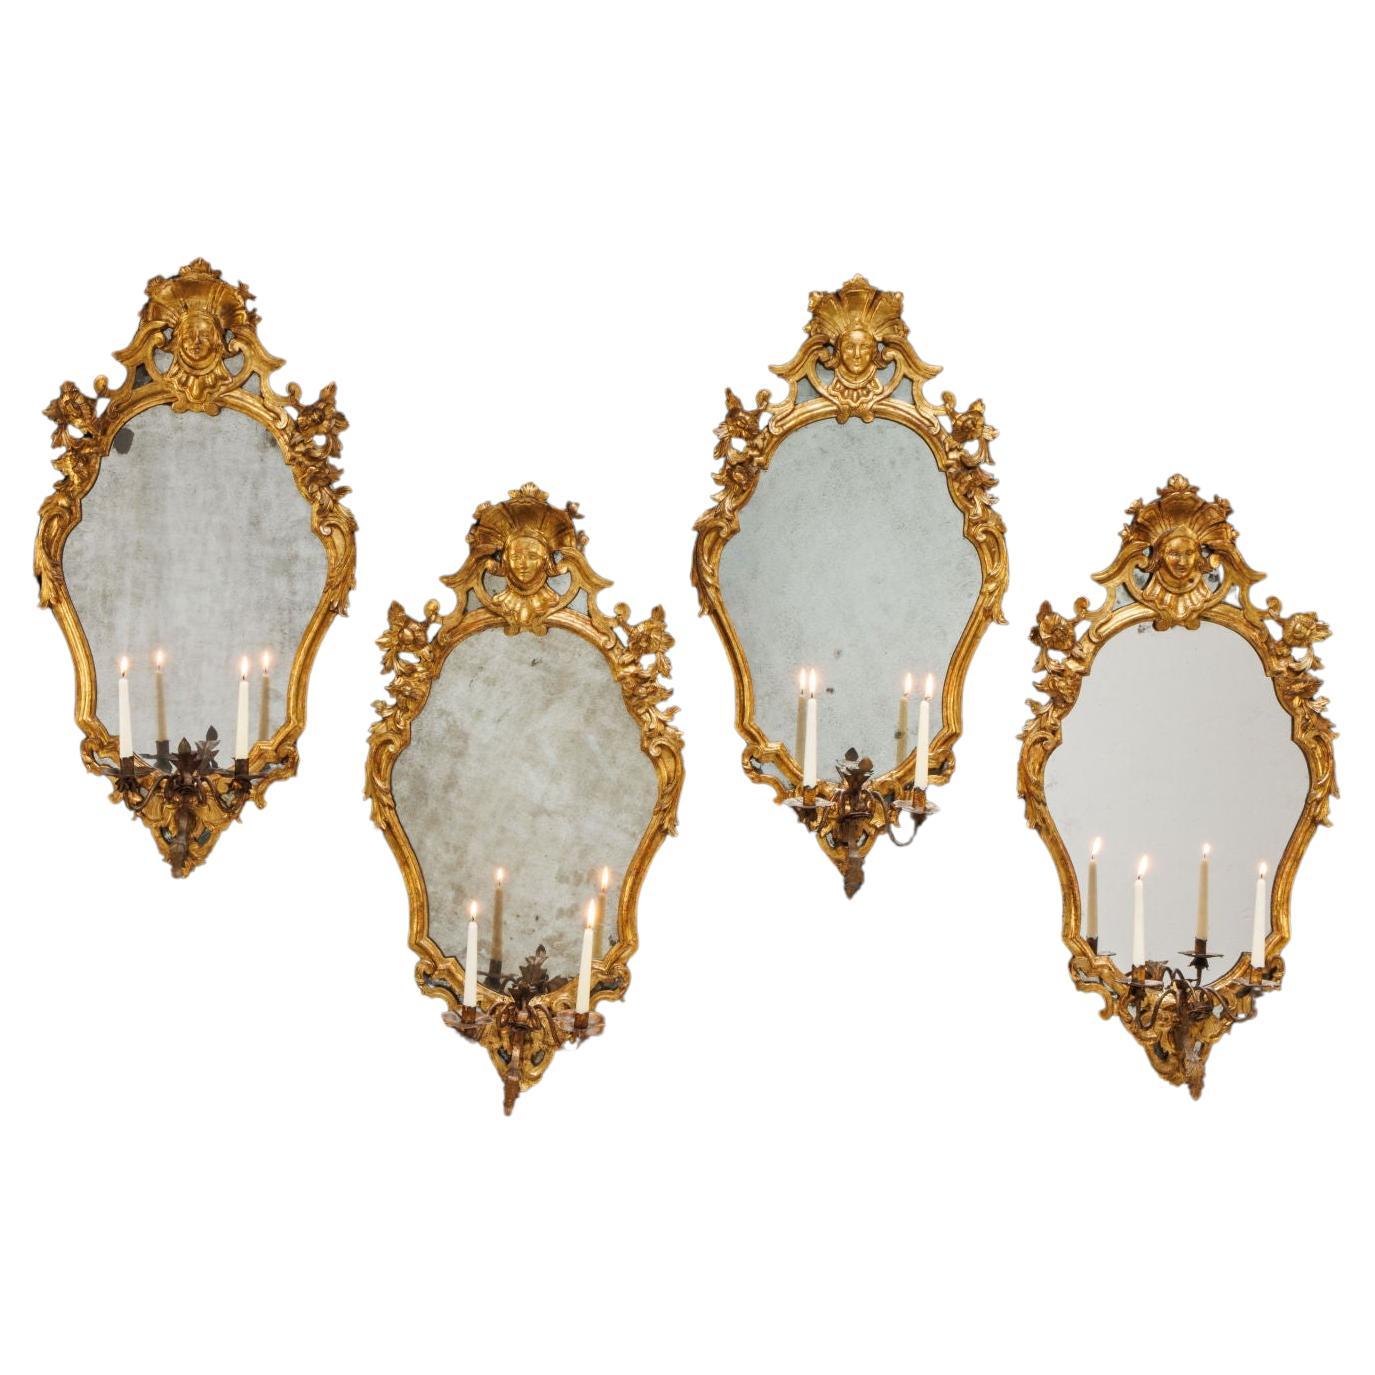 Groupe de quatre miroirs. Toscane, premier quart du XVIIIe siècle